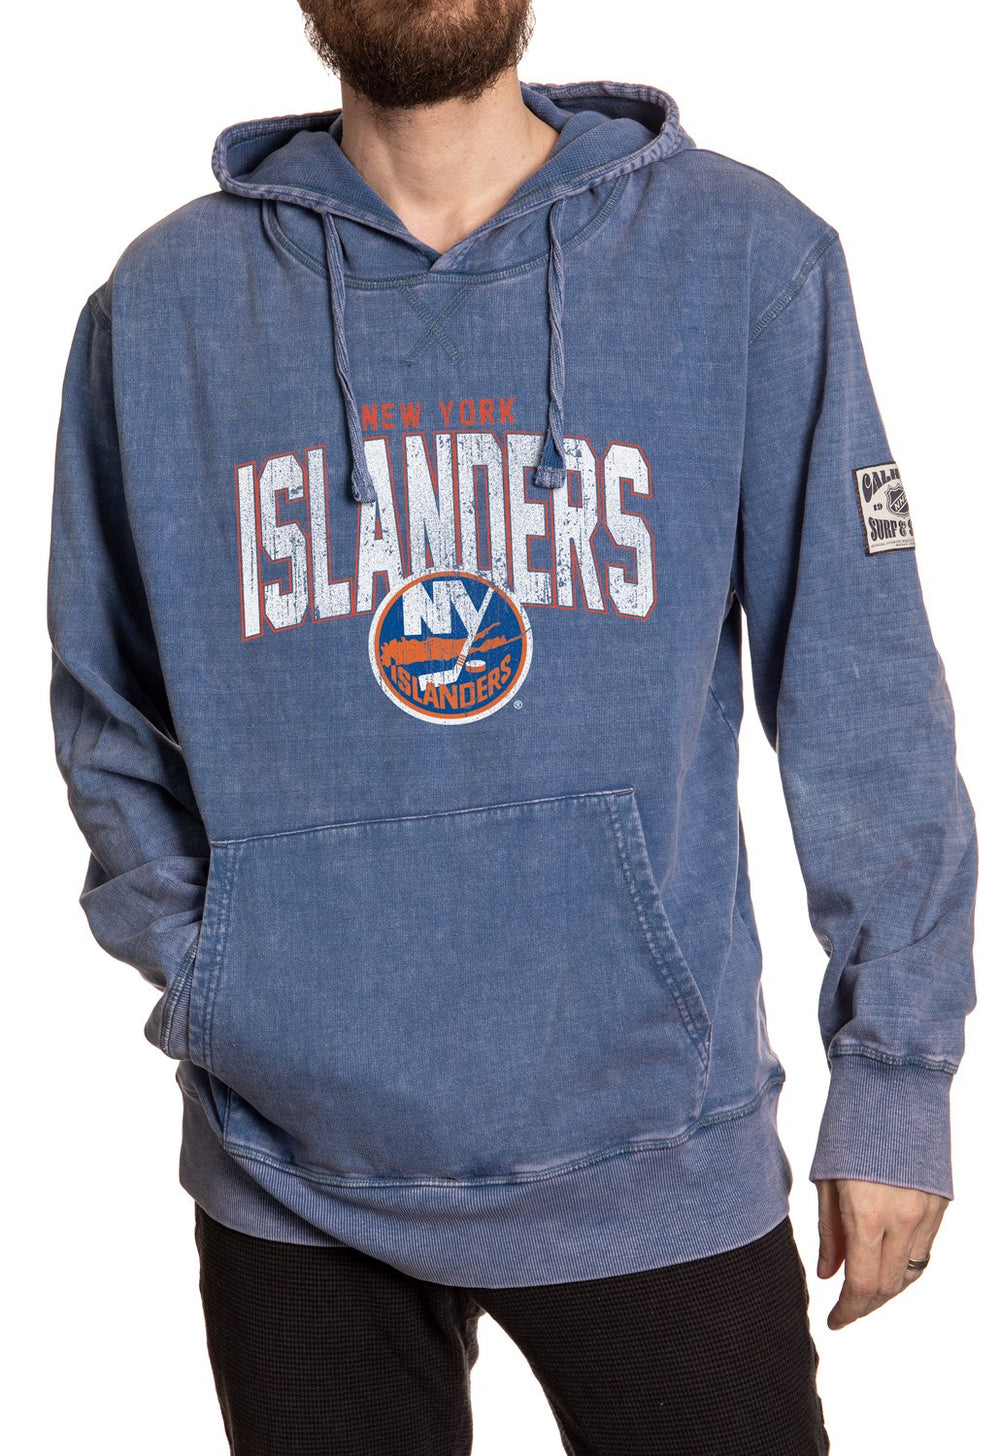 Mens NHL New York Islanders Hoodies & Sweatshirts Tops, Clothing